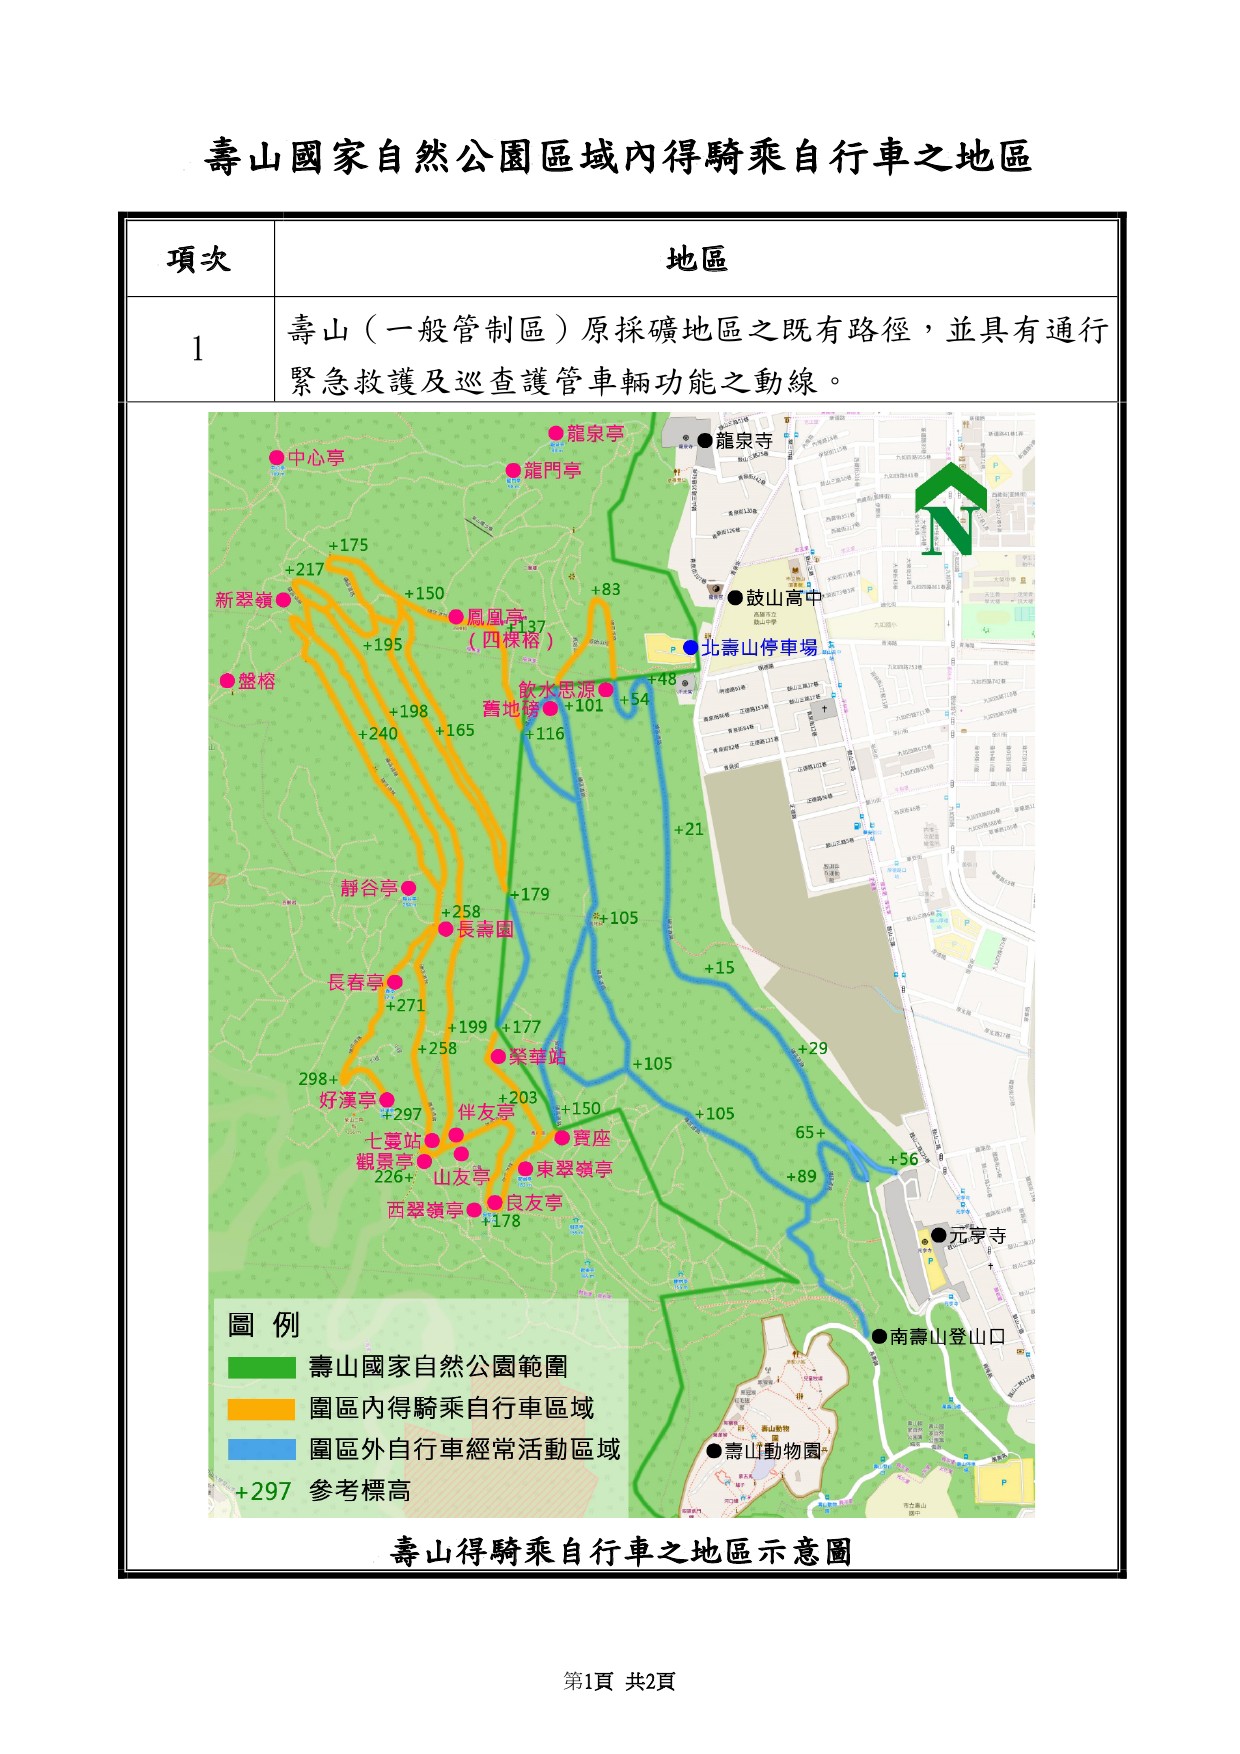 公告壽山國家自然公園區域內指定得騎乘自行車、申請探洞活動、申請從事攀岩活動等3項活動地區-2